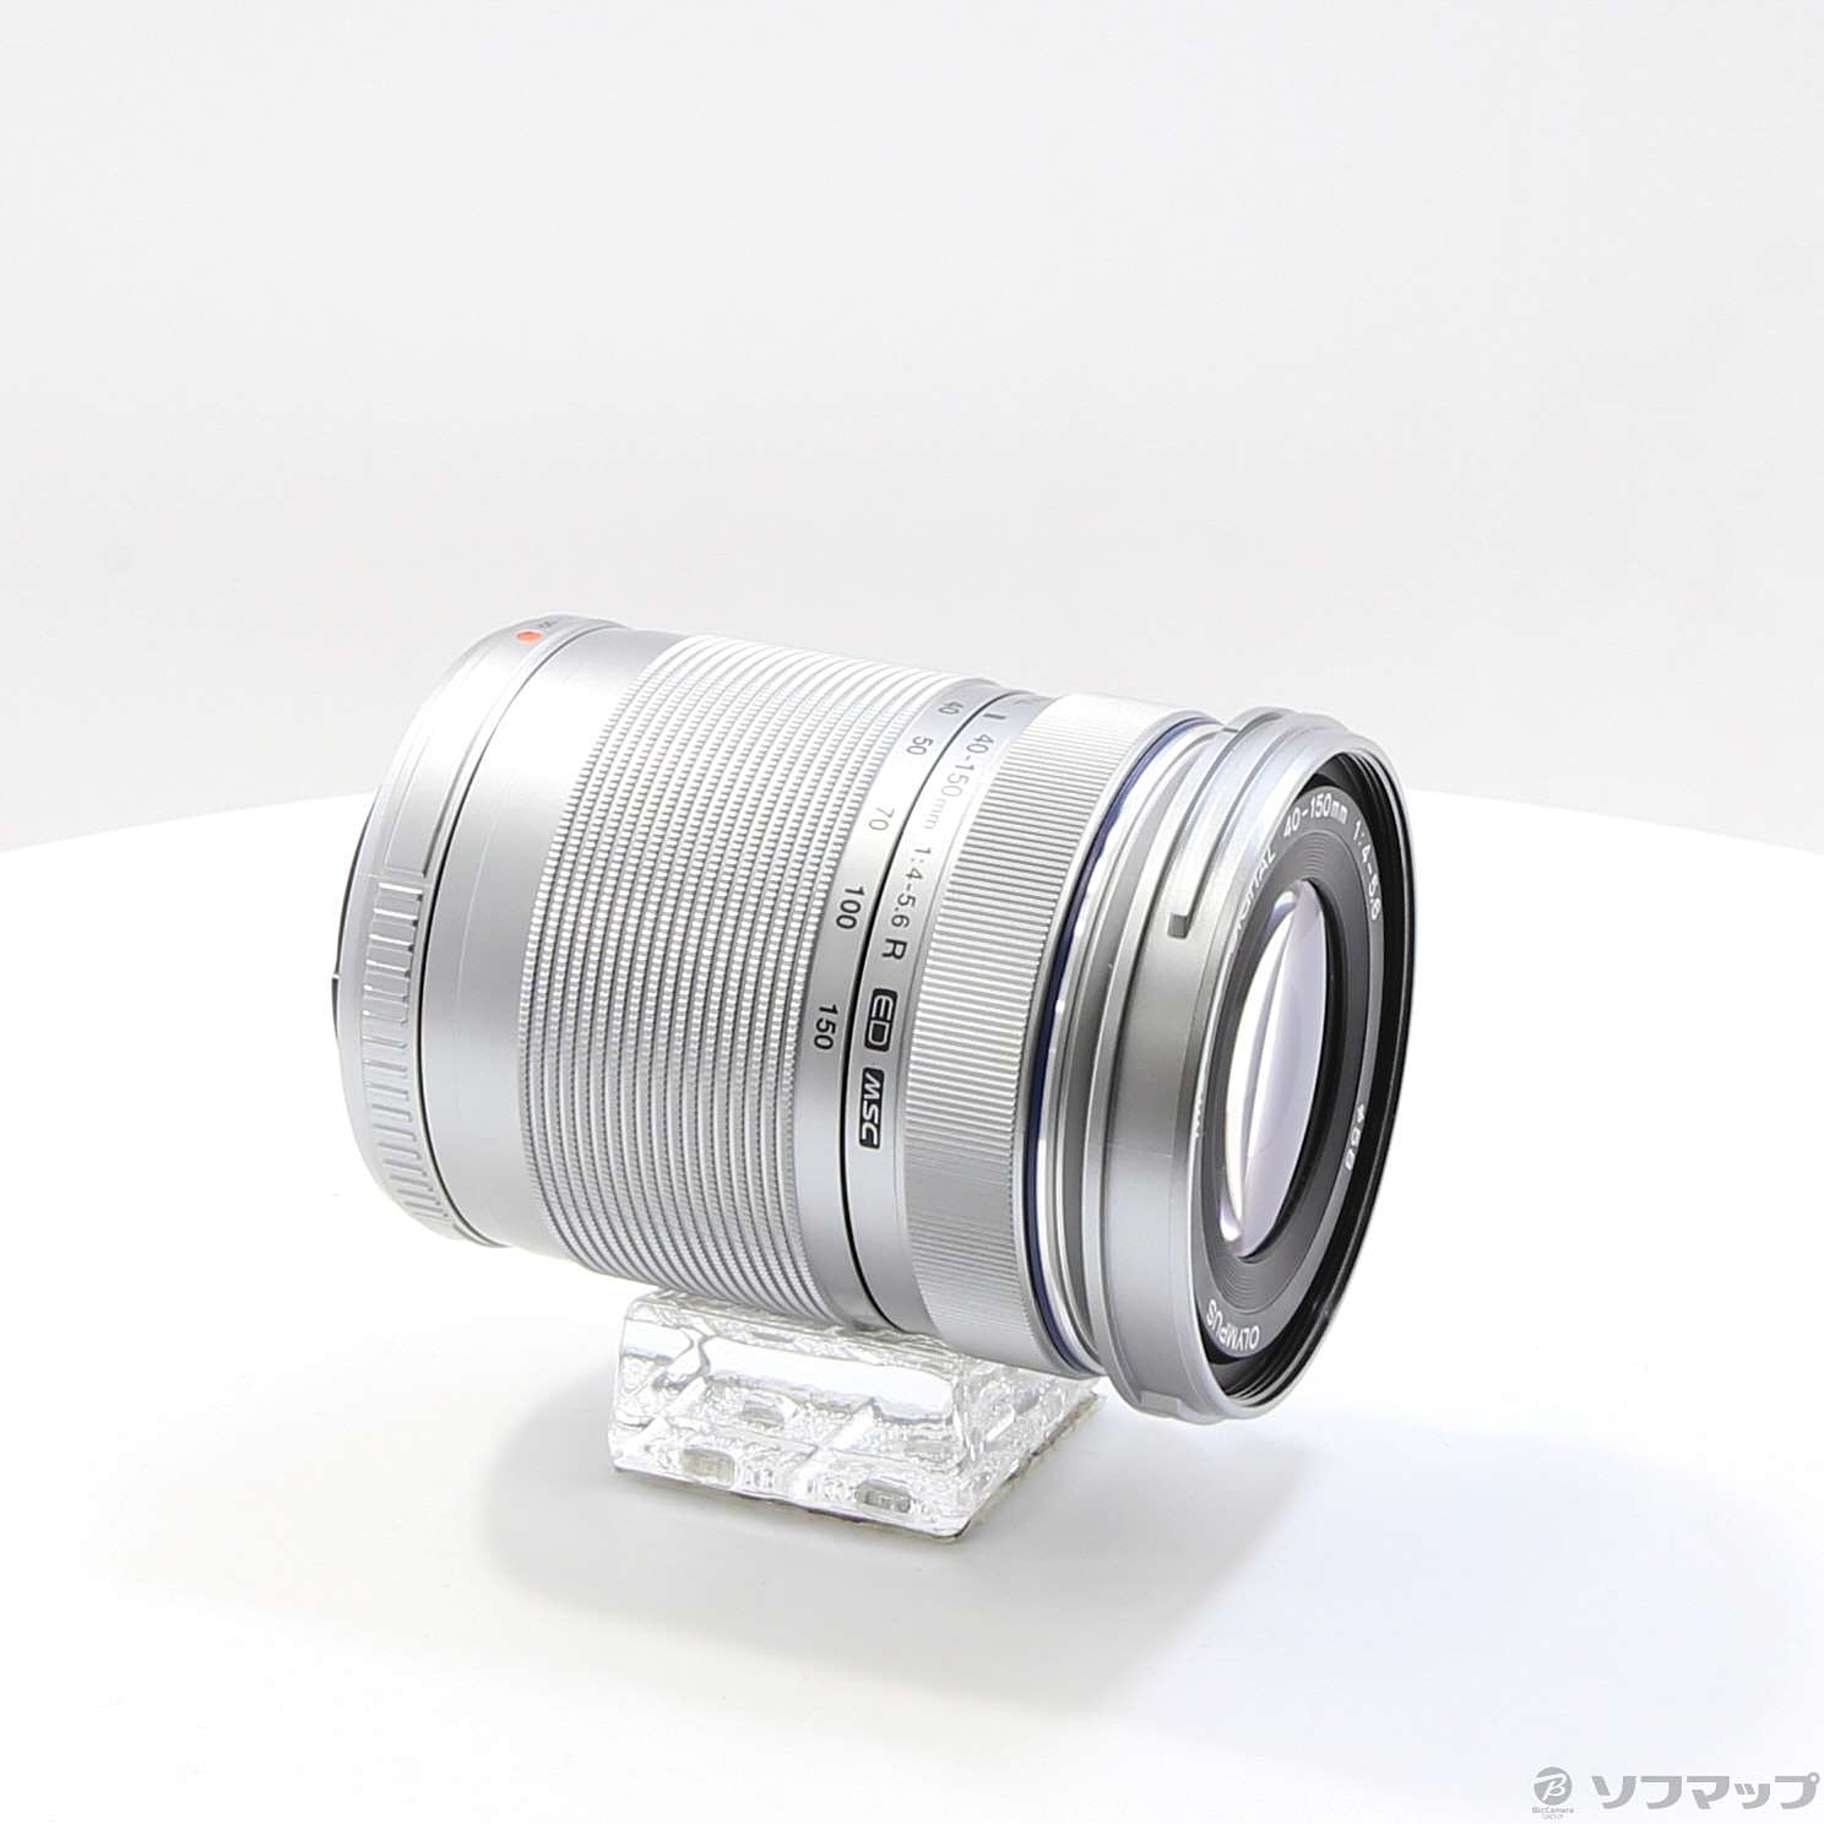 〇〇OLYMPUS オリンパス M.ZUIKO DIGTAL ミラーレス 交換レンズ 40-150mm f4-5.6 ED MSC